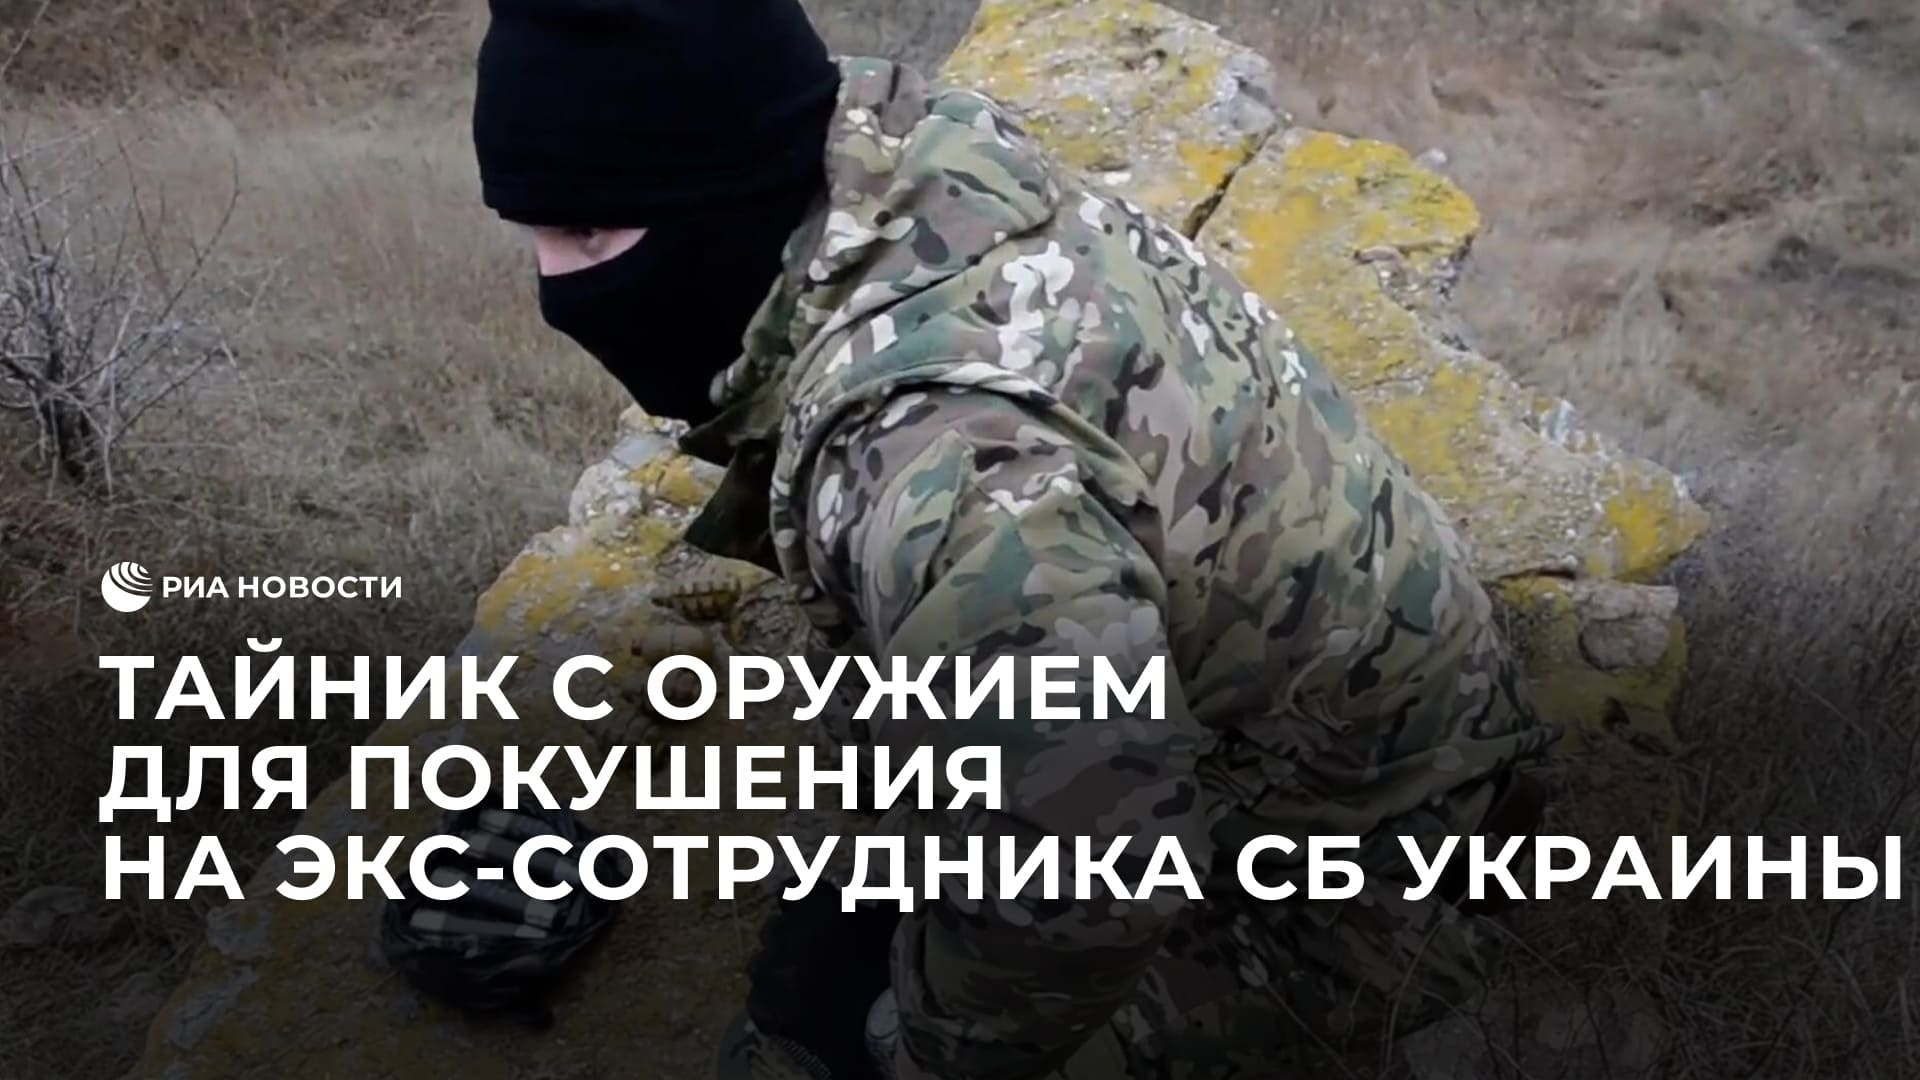 Тайник с оружием для покушения на экс-сотрудника СБ Украины Прозорова